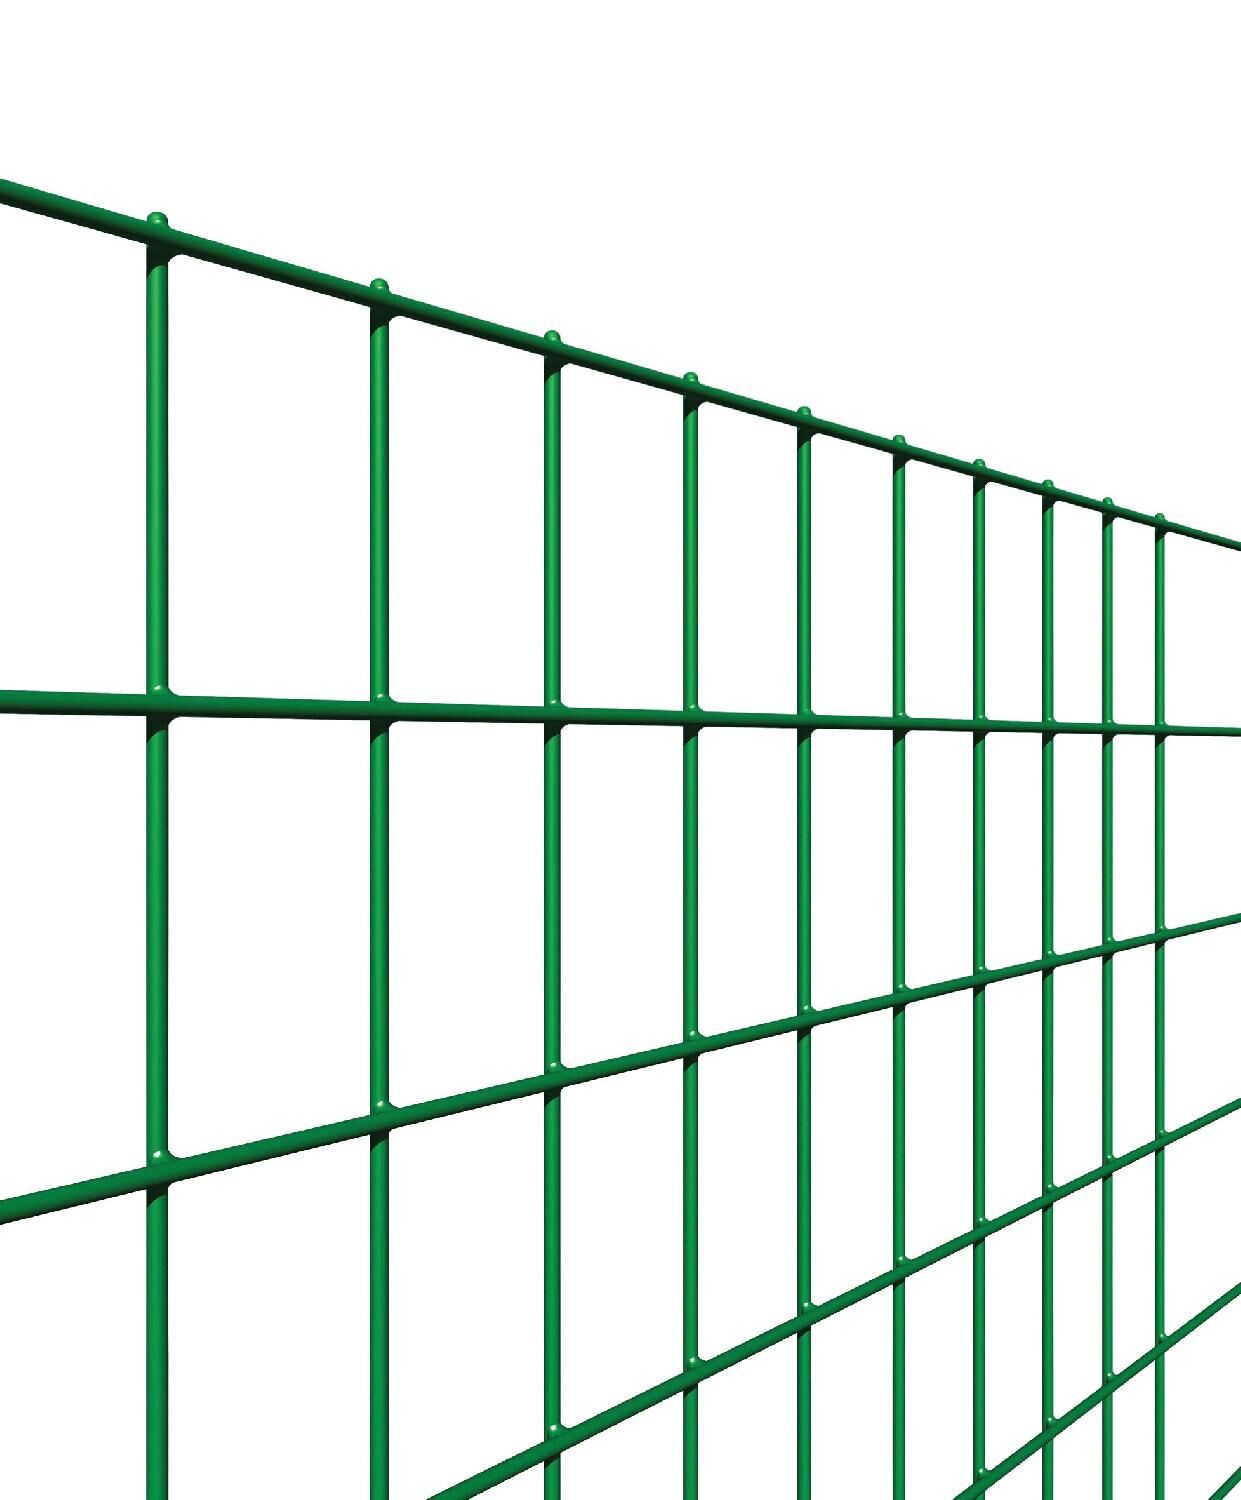 reti sud 123 rete per recinzione filo zincato e plastificato elettrosaldata maglie 50x75 mm h 175 cm rotolo 25 mt colore verde - 123 square plax